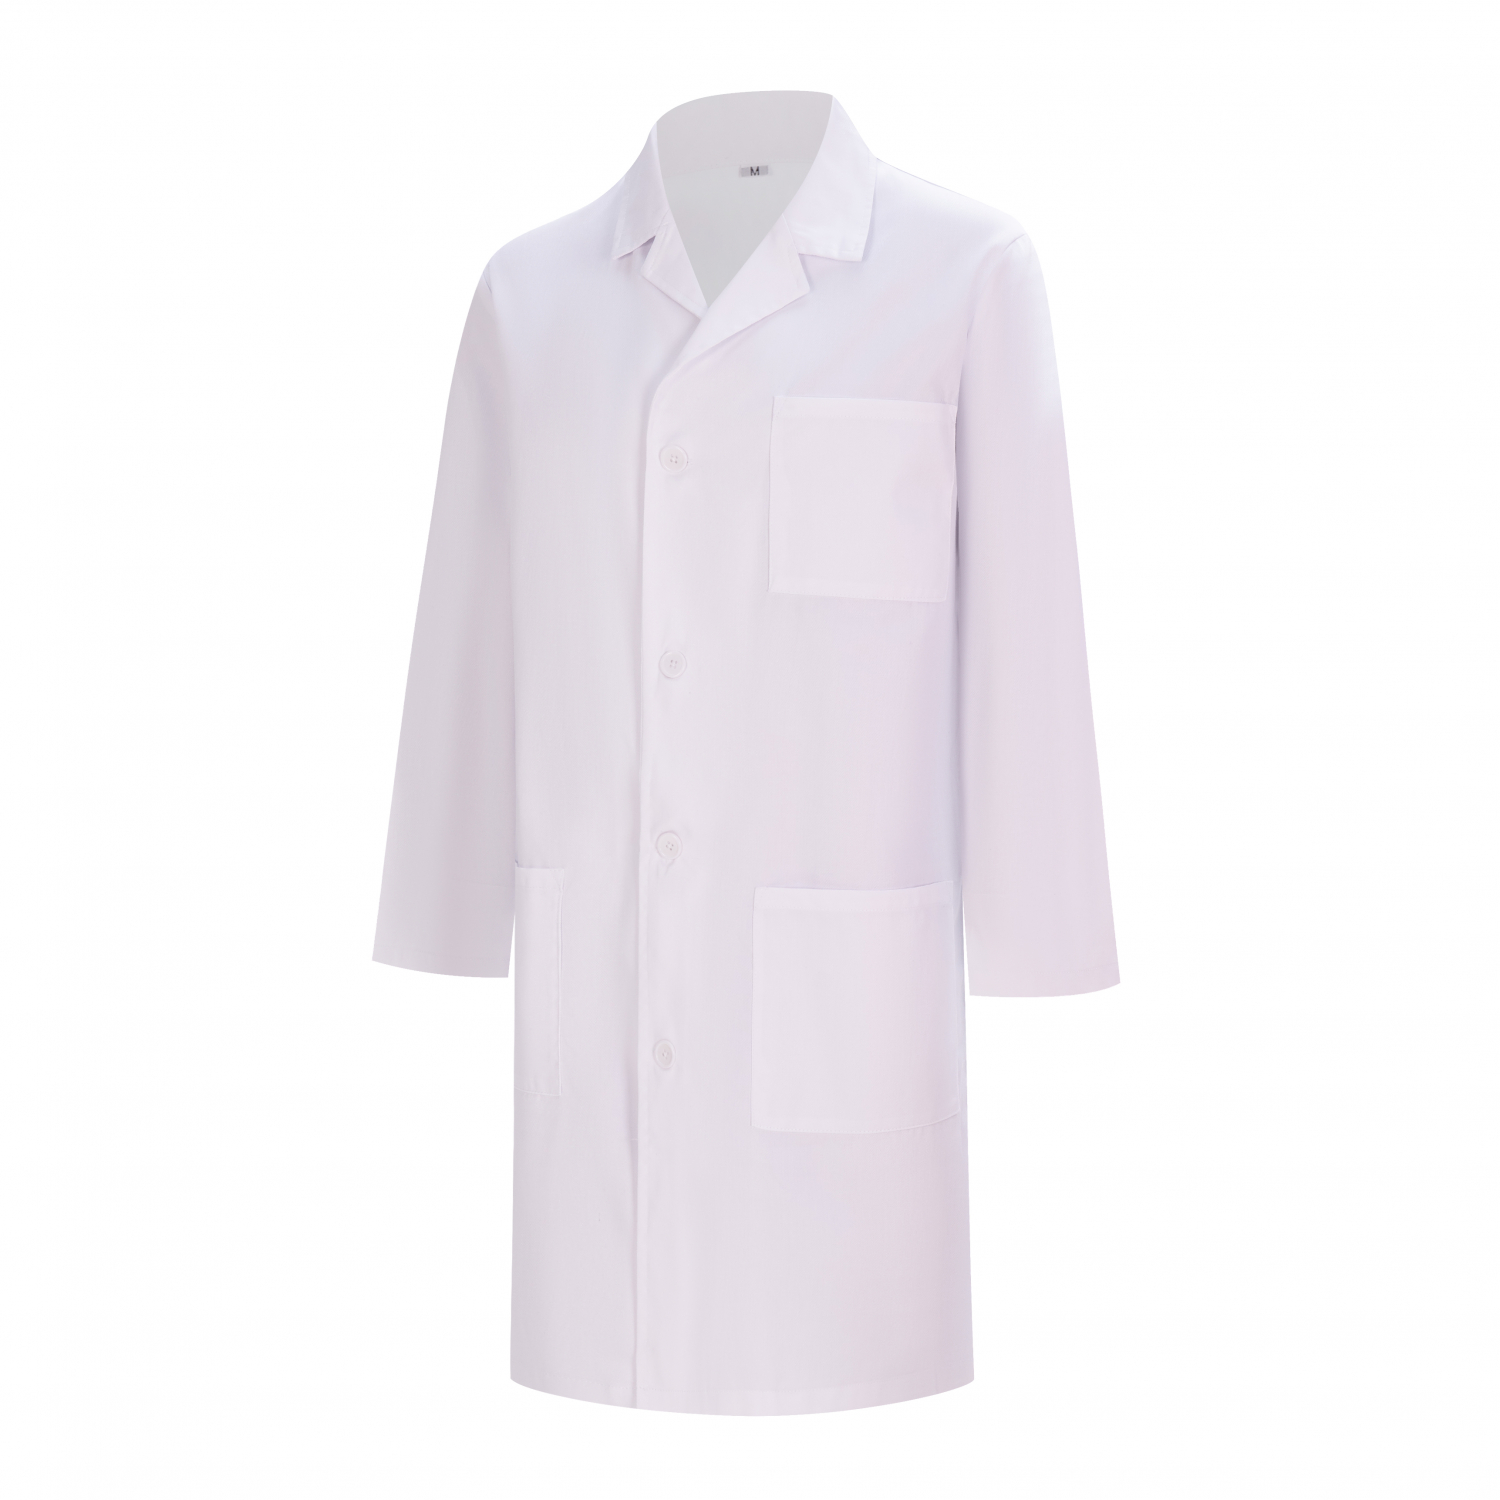 Laboratorierock för kvinnor - Medicinska uniformer - Vit kappa 8166